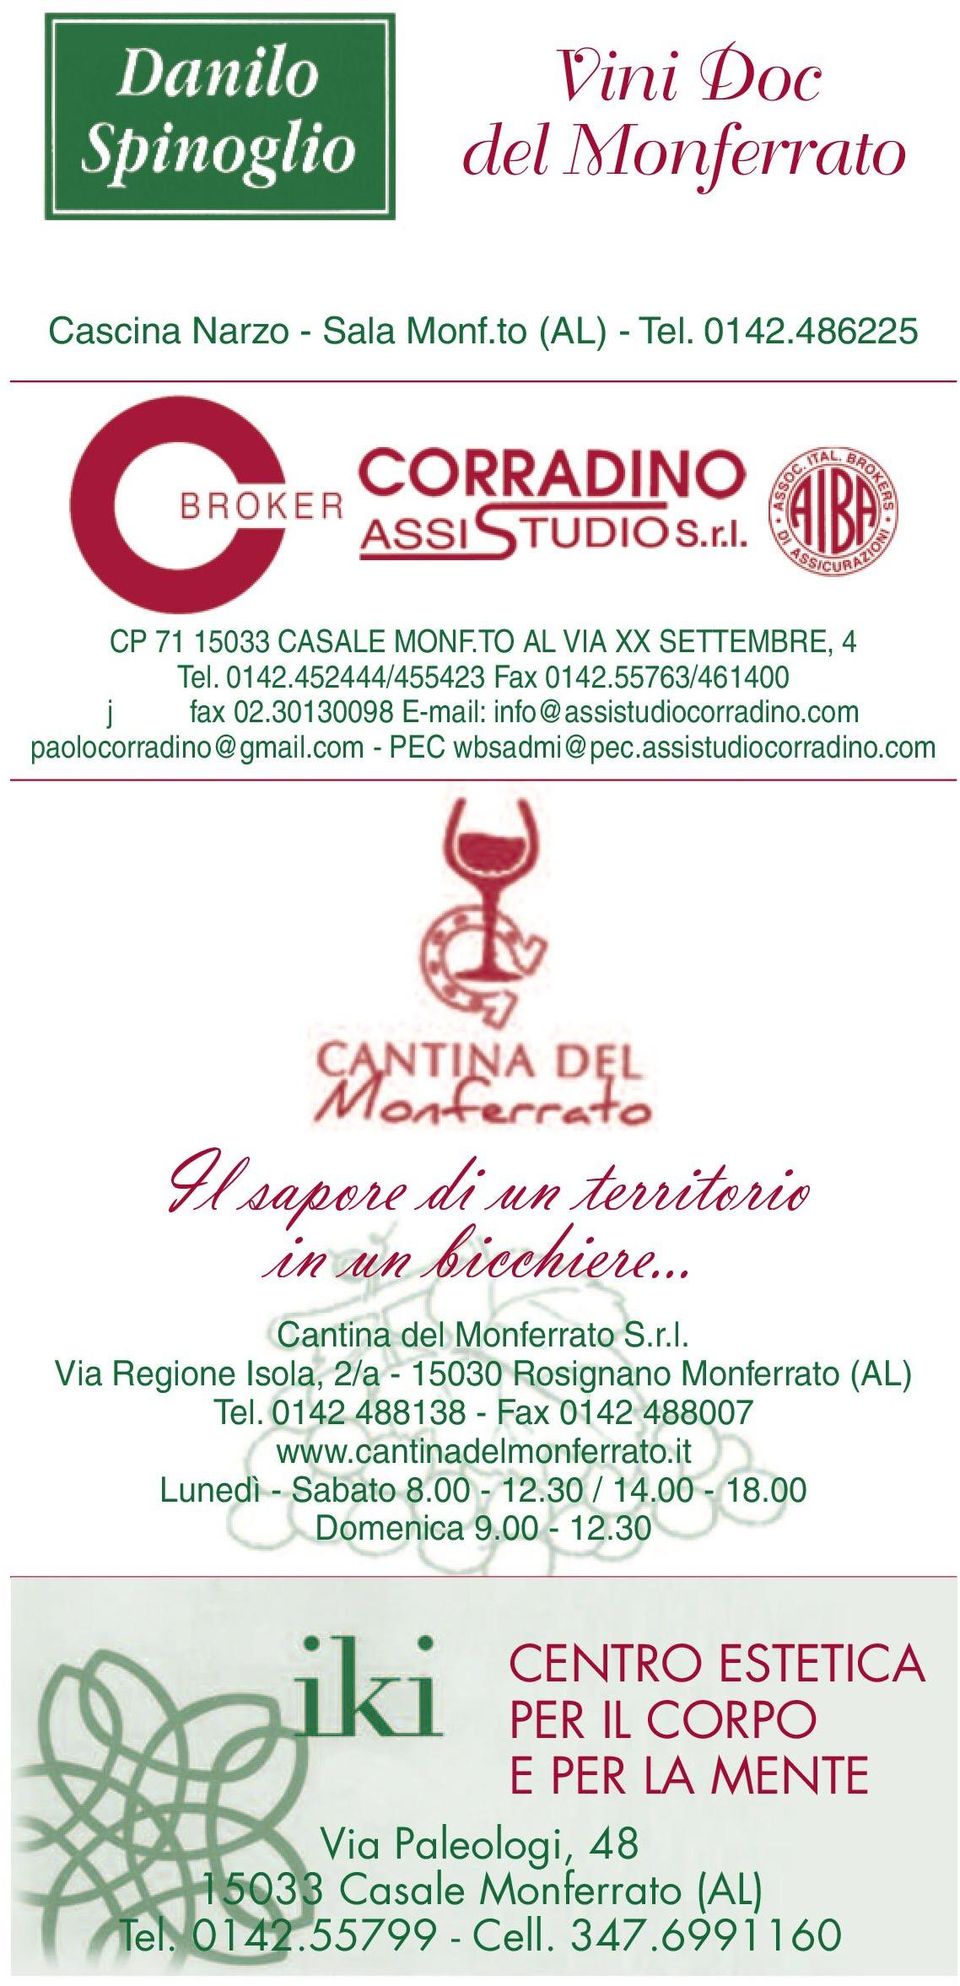 .. Cantina del Monferrato S.r.l. Via Regione Isola, 2/a - 15030 Rosignano Monferrato (AL) Tel. 0142 488138 - Fax 0142 488007 www.cantinadelmonferrato.